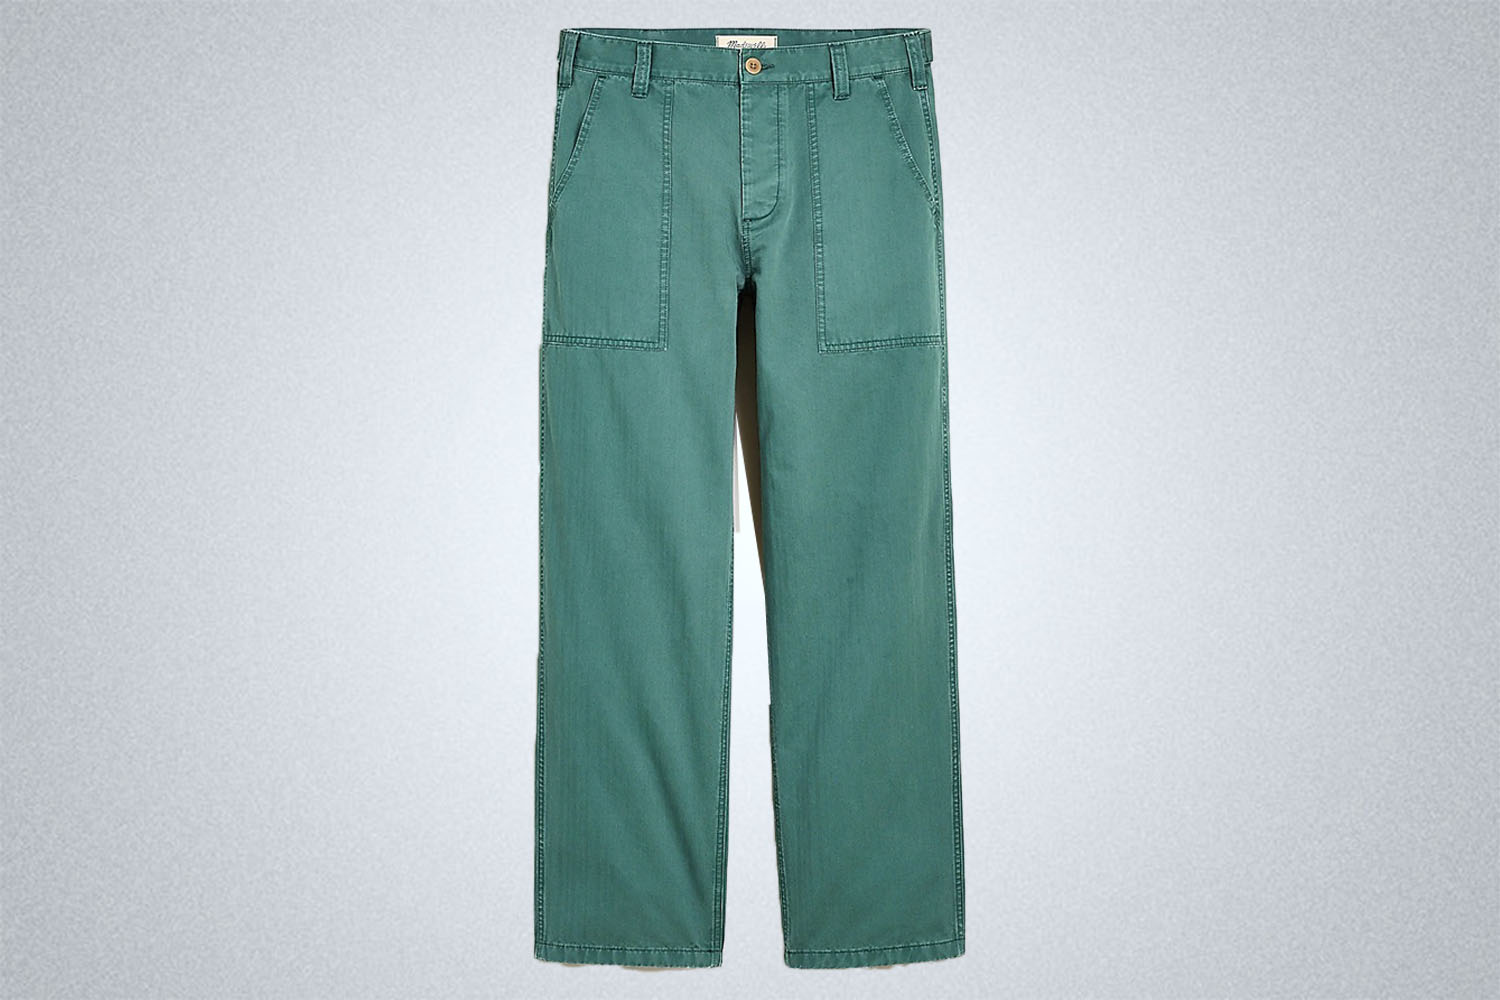 Madewell Herringbone Baggy Workwear Pants